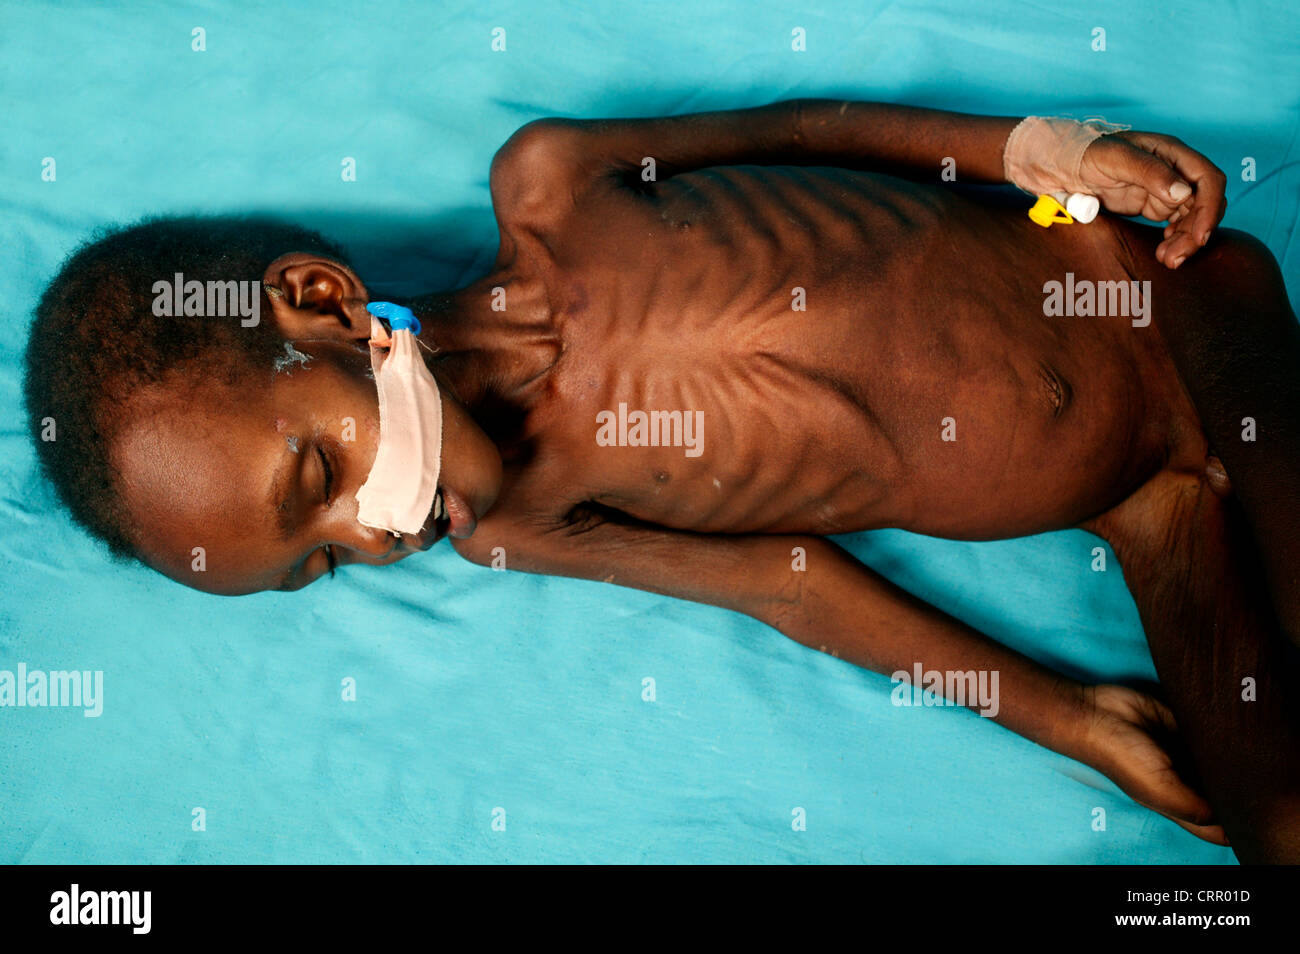 Un bambino di 2 anni ragazzo soffre di grave malnutrizione con grave wastening e la perdita di grasso sottocutaneo. Foto Stock